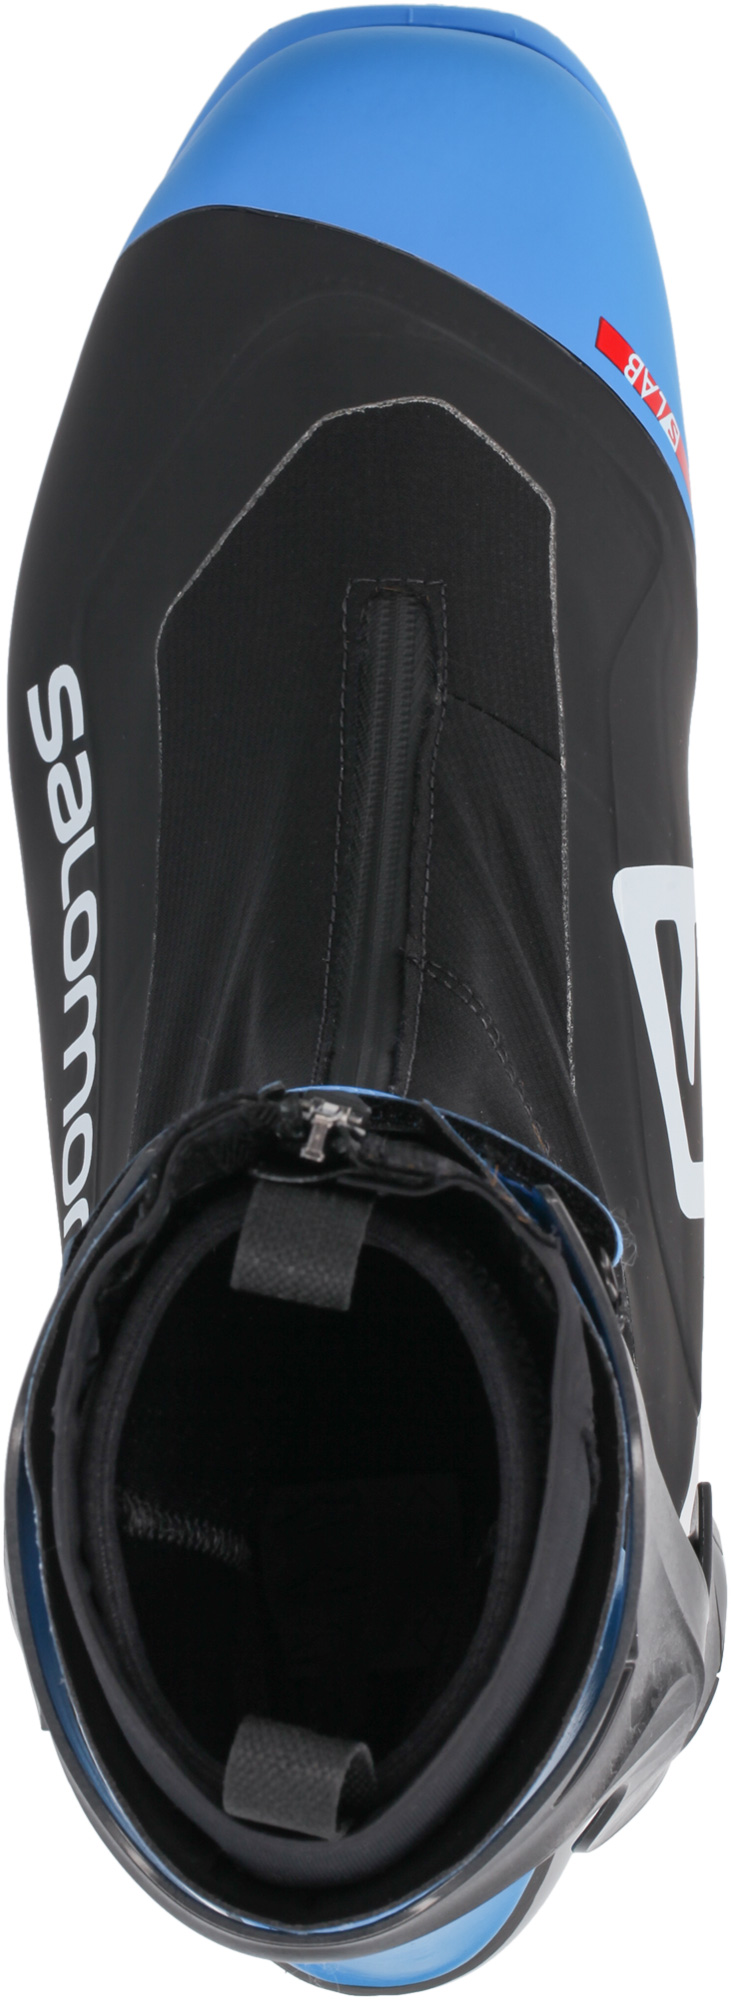 Ботинки для беговых лыж Salomon S/Lab Carbon Skate Prolink 2021, black/blue, 44